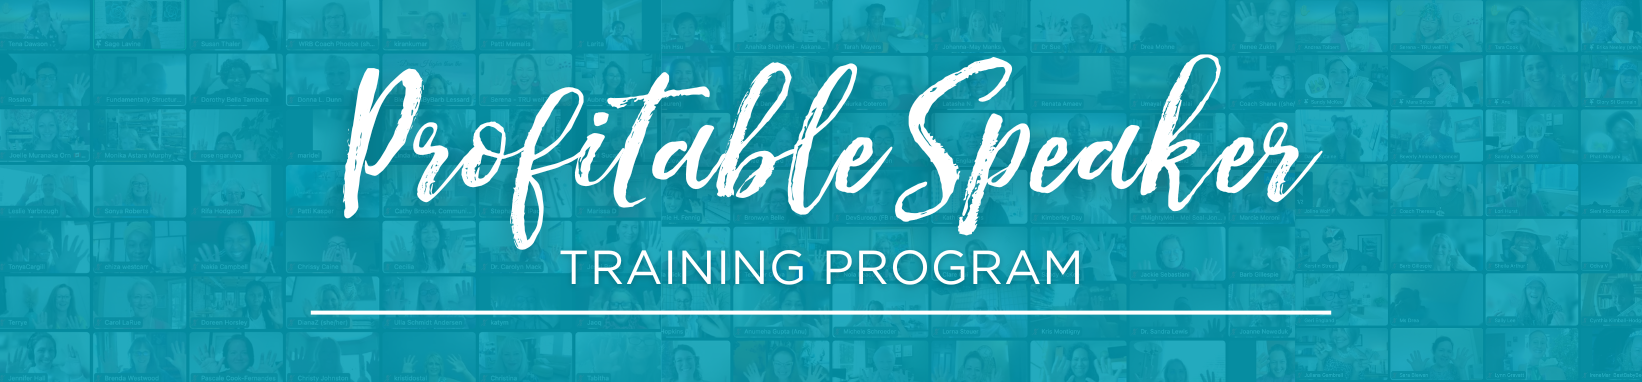 Profitable Speaker Training Program